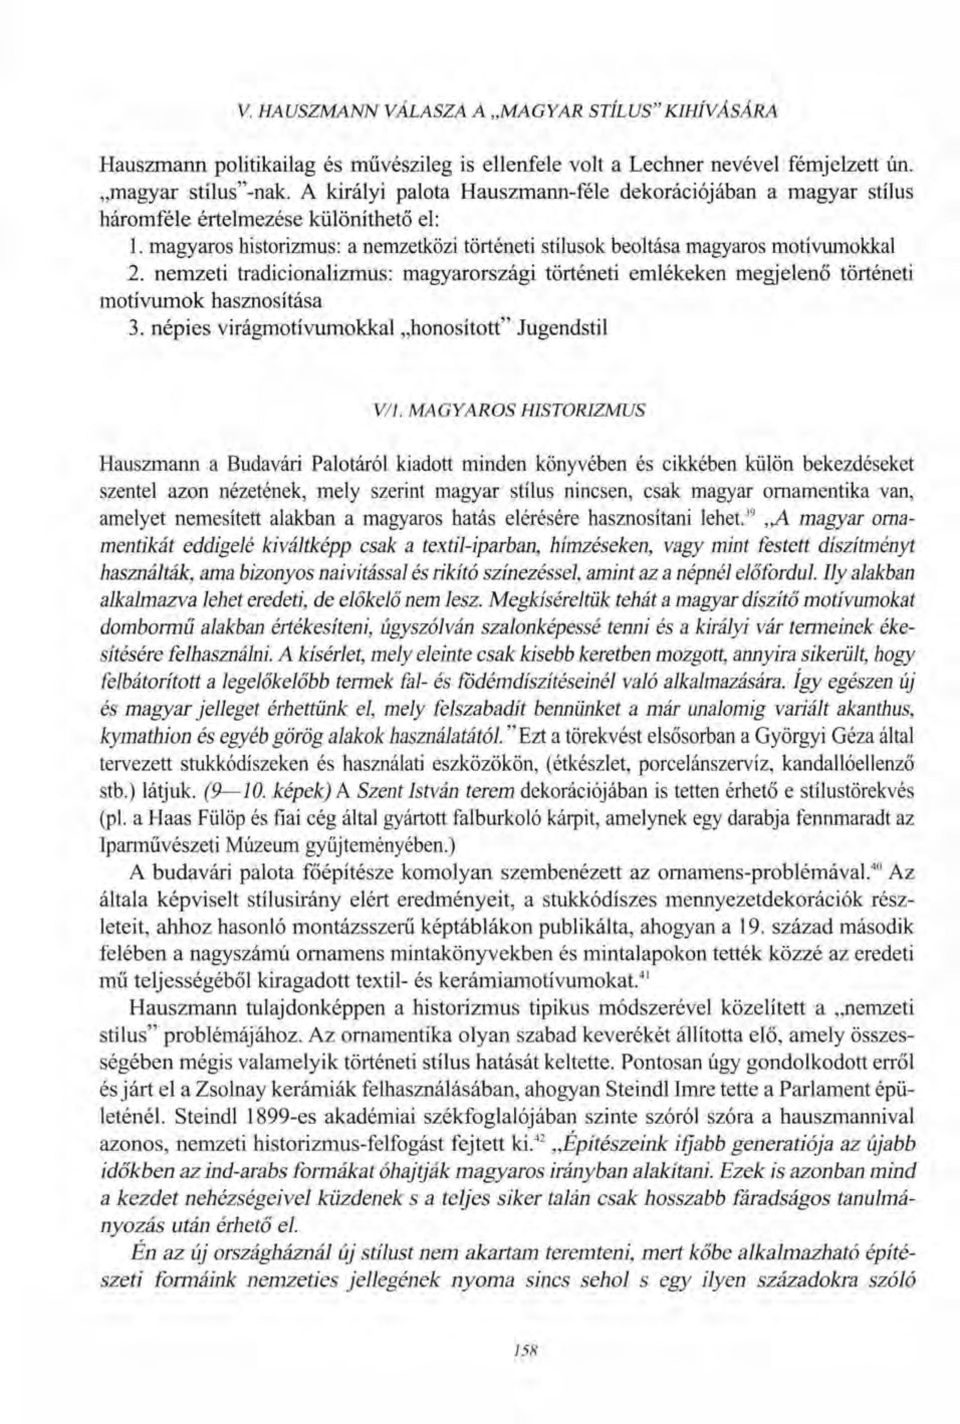 nemzeti tradicionalizmus: magyarországi történeti emlékeken megjelenő történeti motívumok hasznosítása 3. népies virágmotívumokkal honosított" Jugendstil V/l.